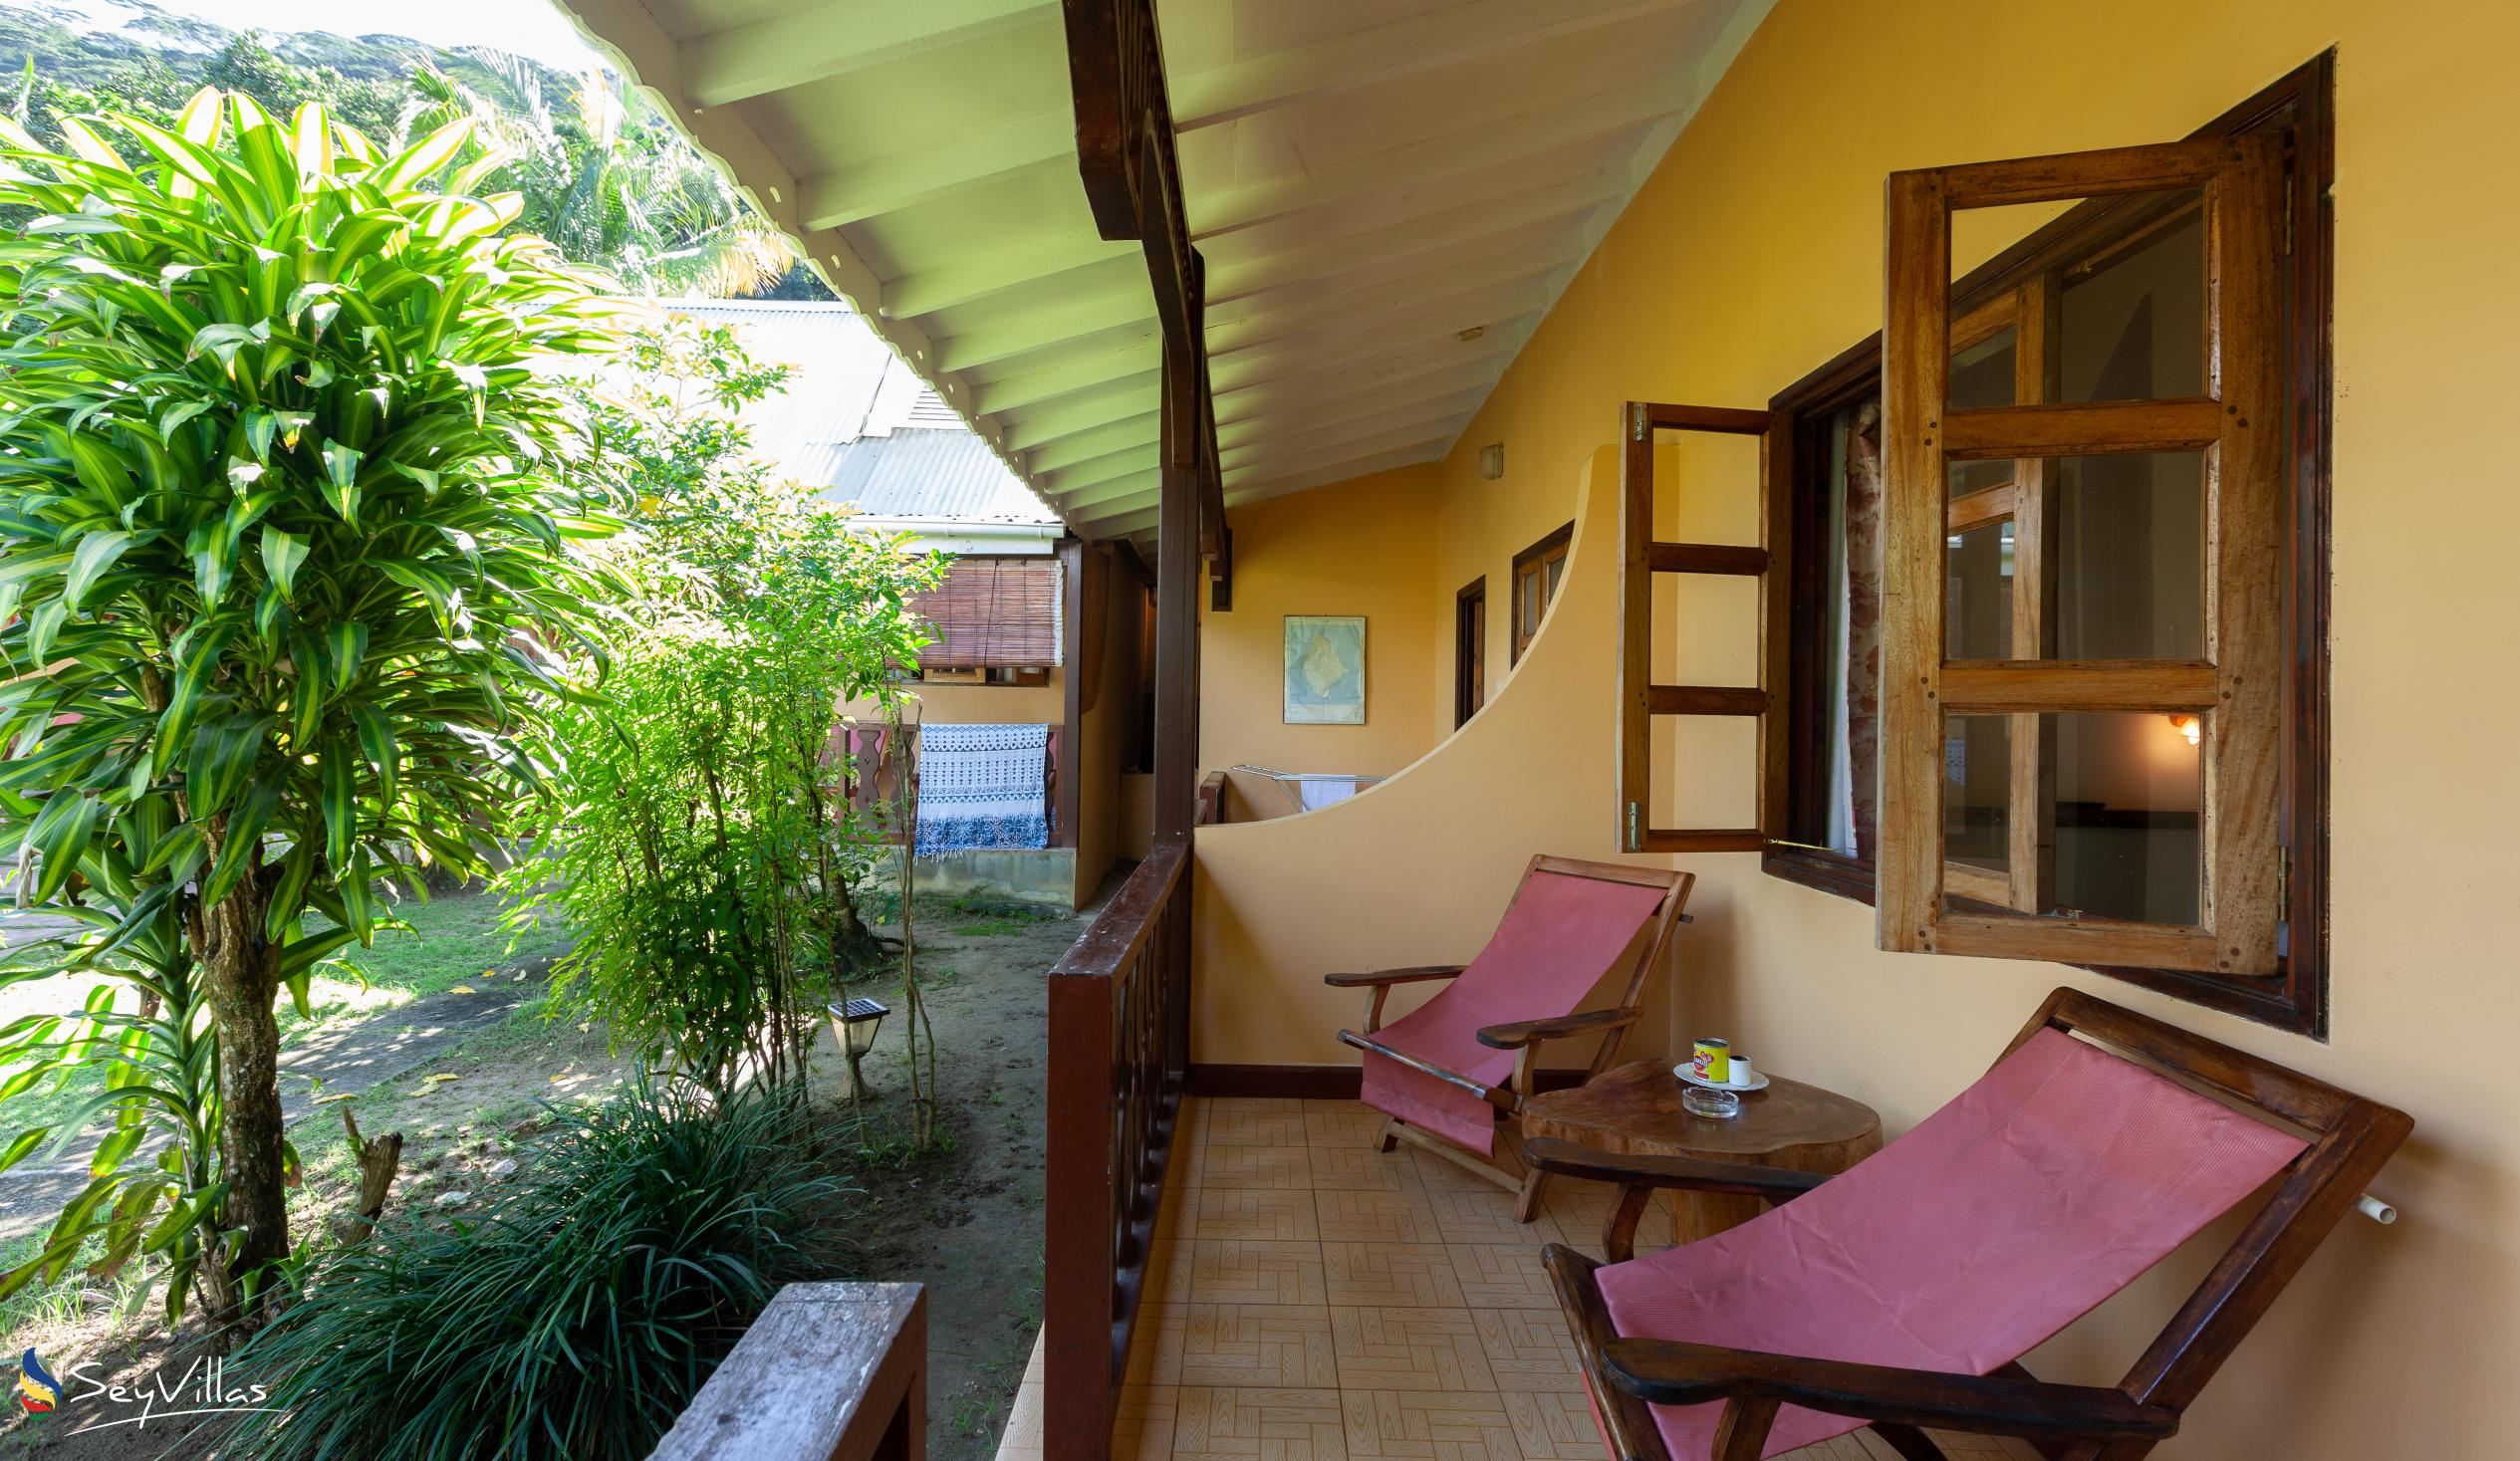 Photo 55: Bernique Guesthouse - Standard Room - La Digue (Seychelles)